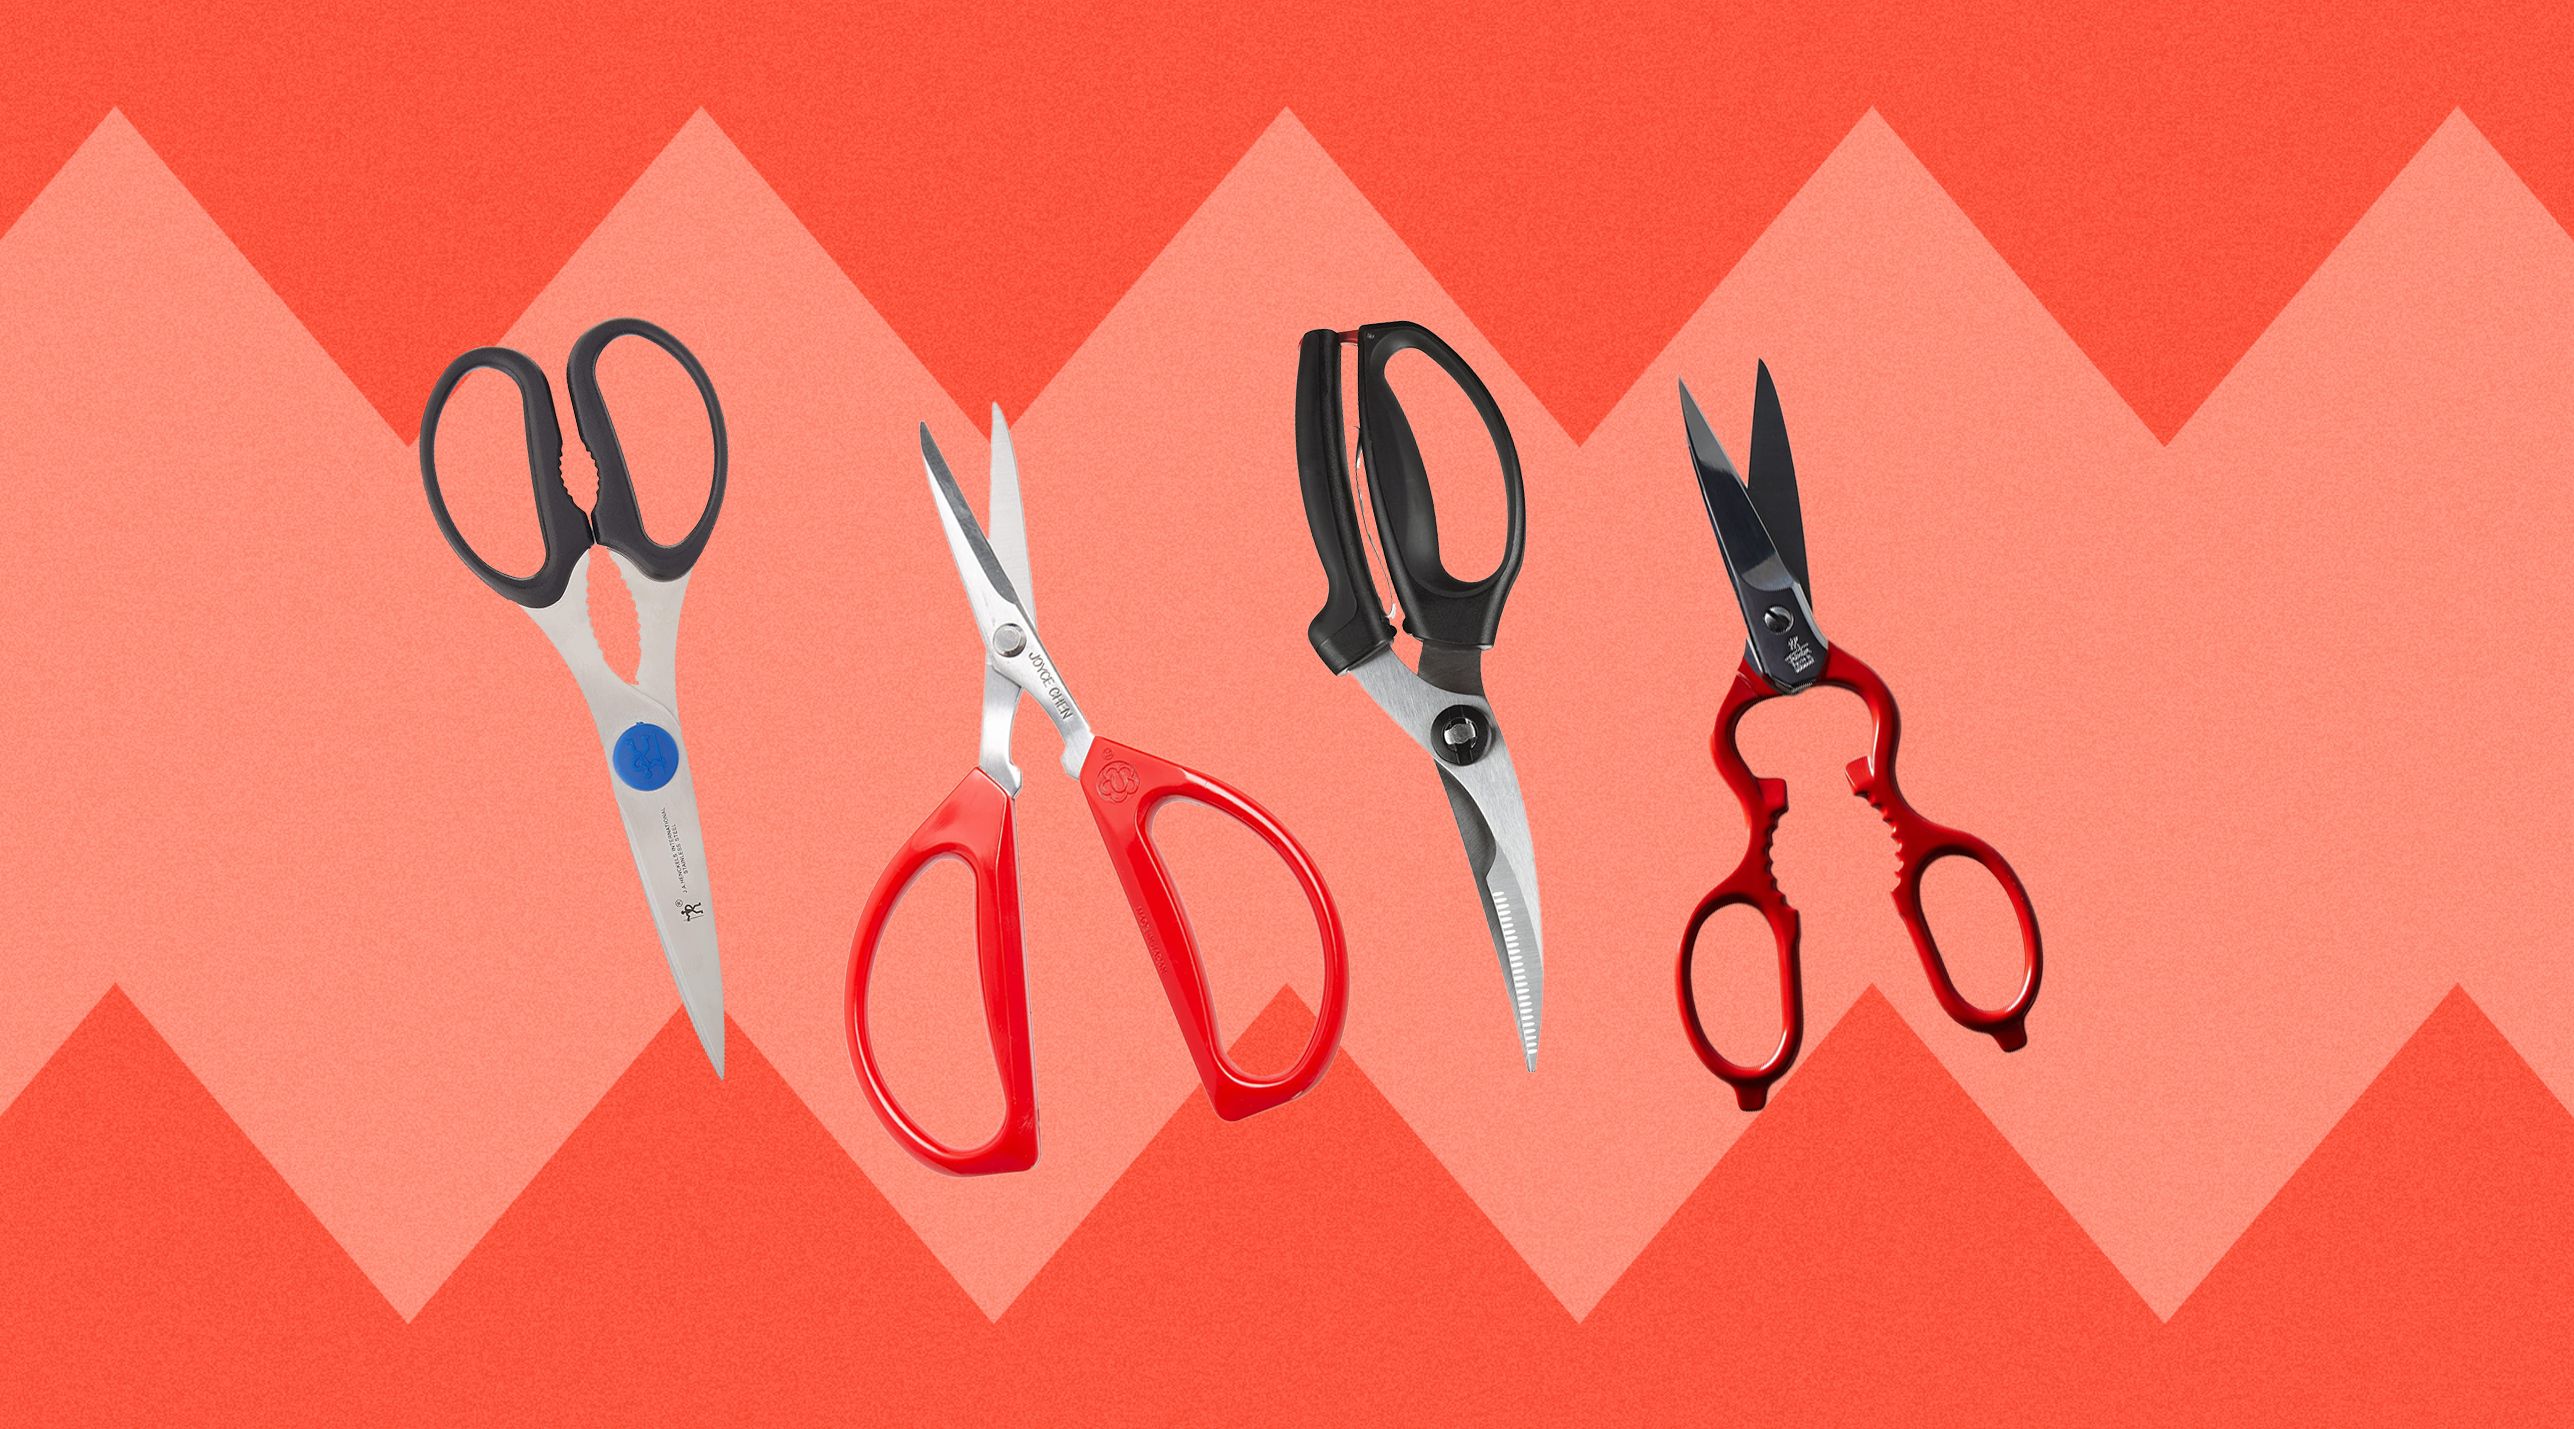 Joyce Chen Original Unlimited Kitchen Scissors | Red